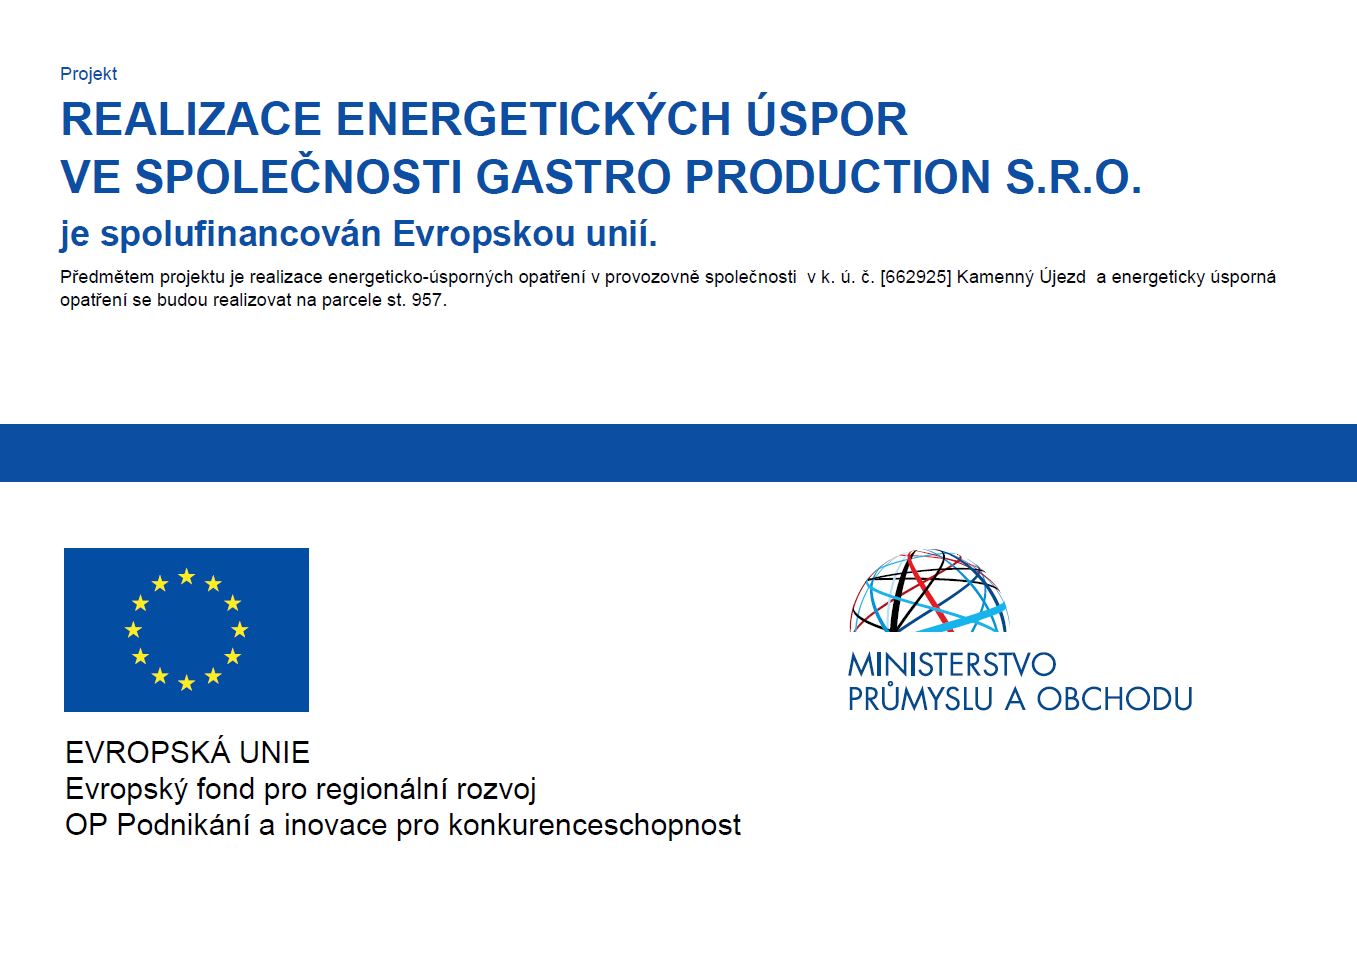 EU REALIZACE ENERGETICKÝCH ÚSPOR VE SPOLEČNOSTI GASTRO PRODUCTION S.R.O.